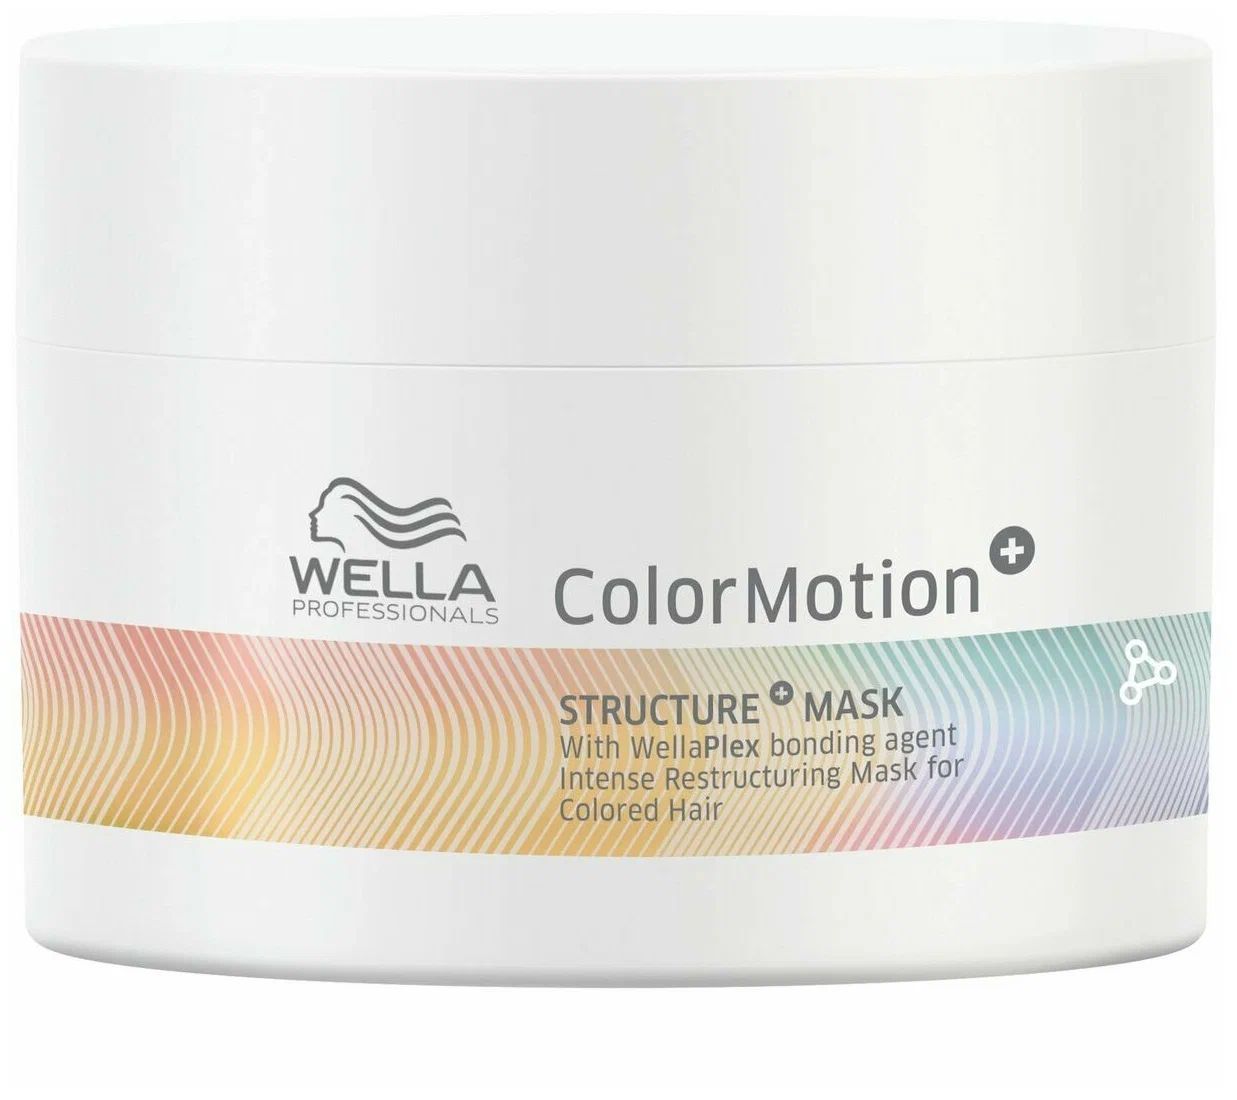 Маска Wella Color Motion Structure Mask для интенсивного восстановления волос 150 мл wella professionals маска для интенсивного восстановления окрашенных волос color motion 150 мл